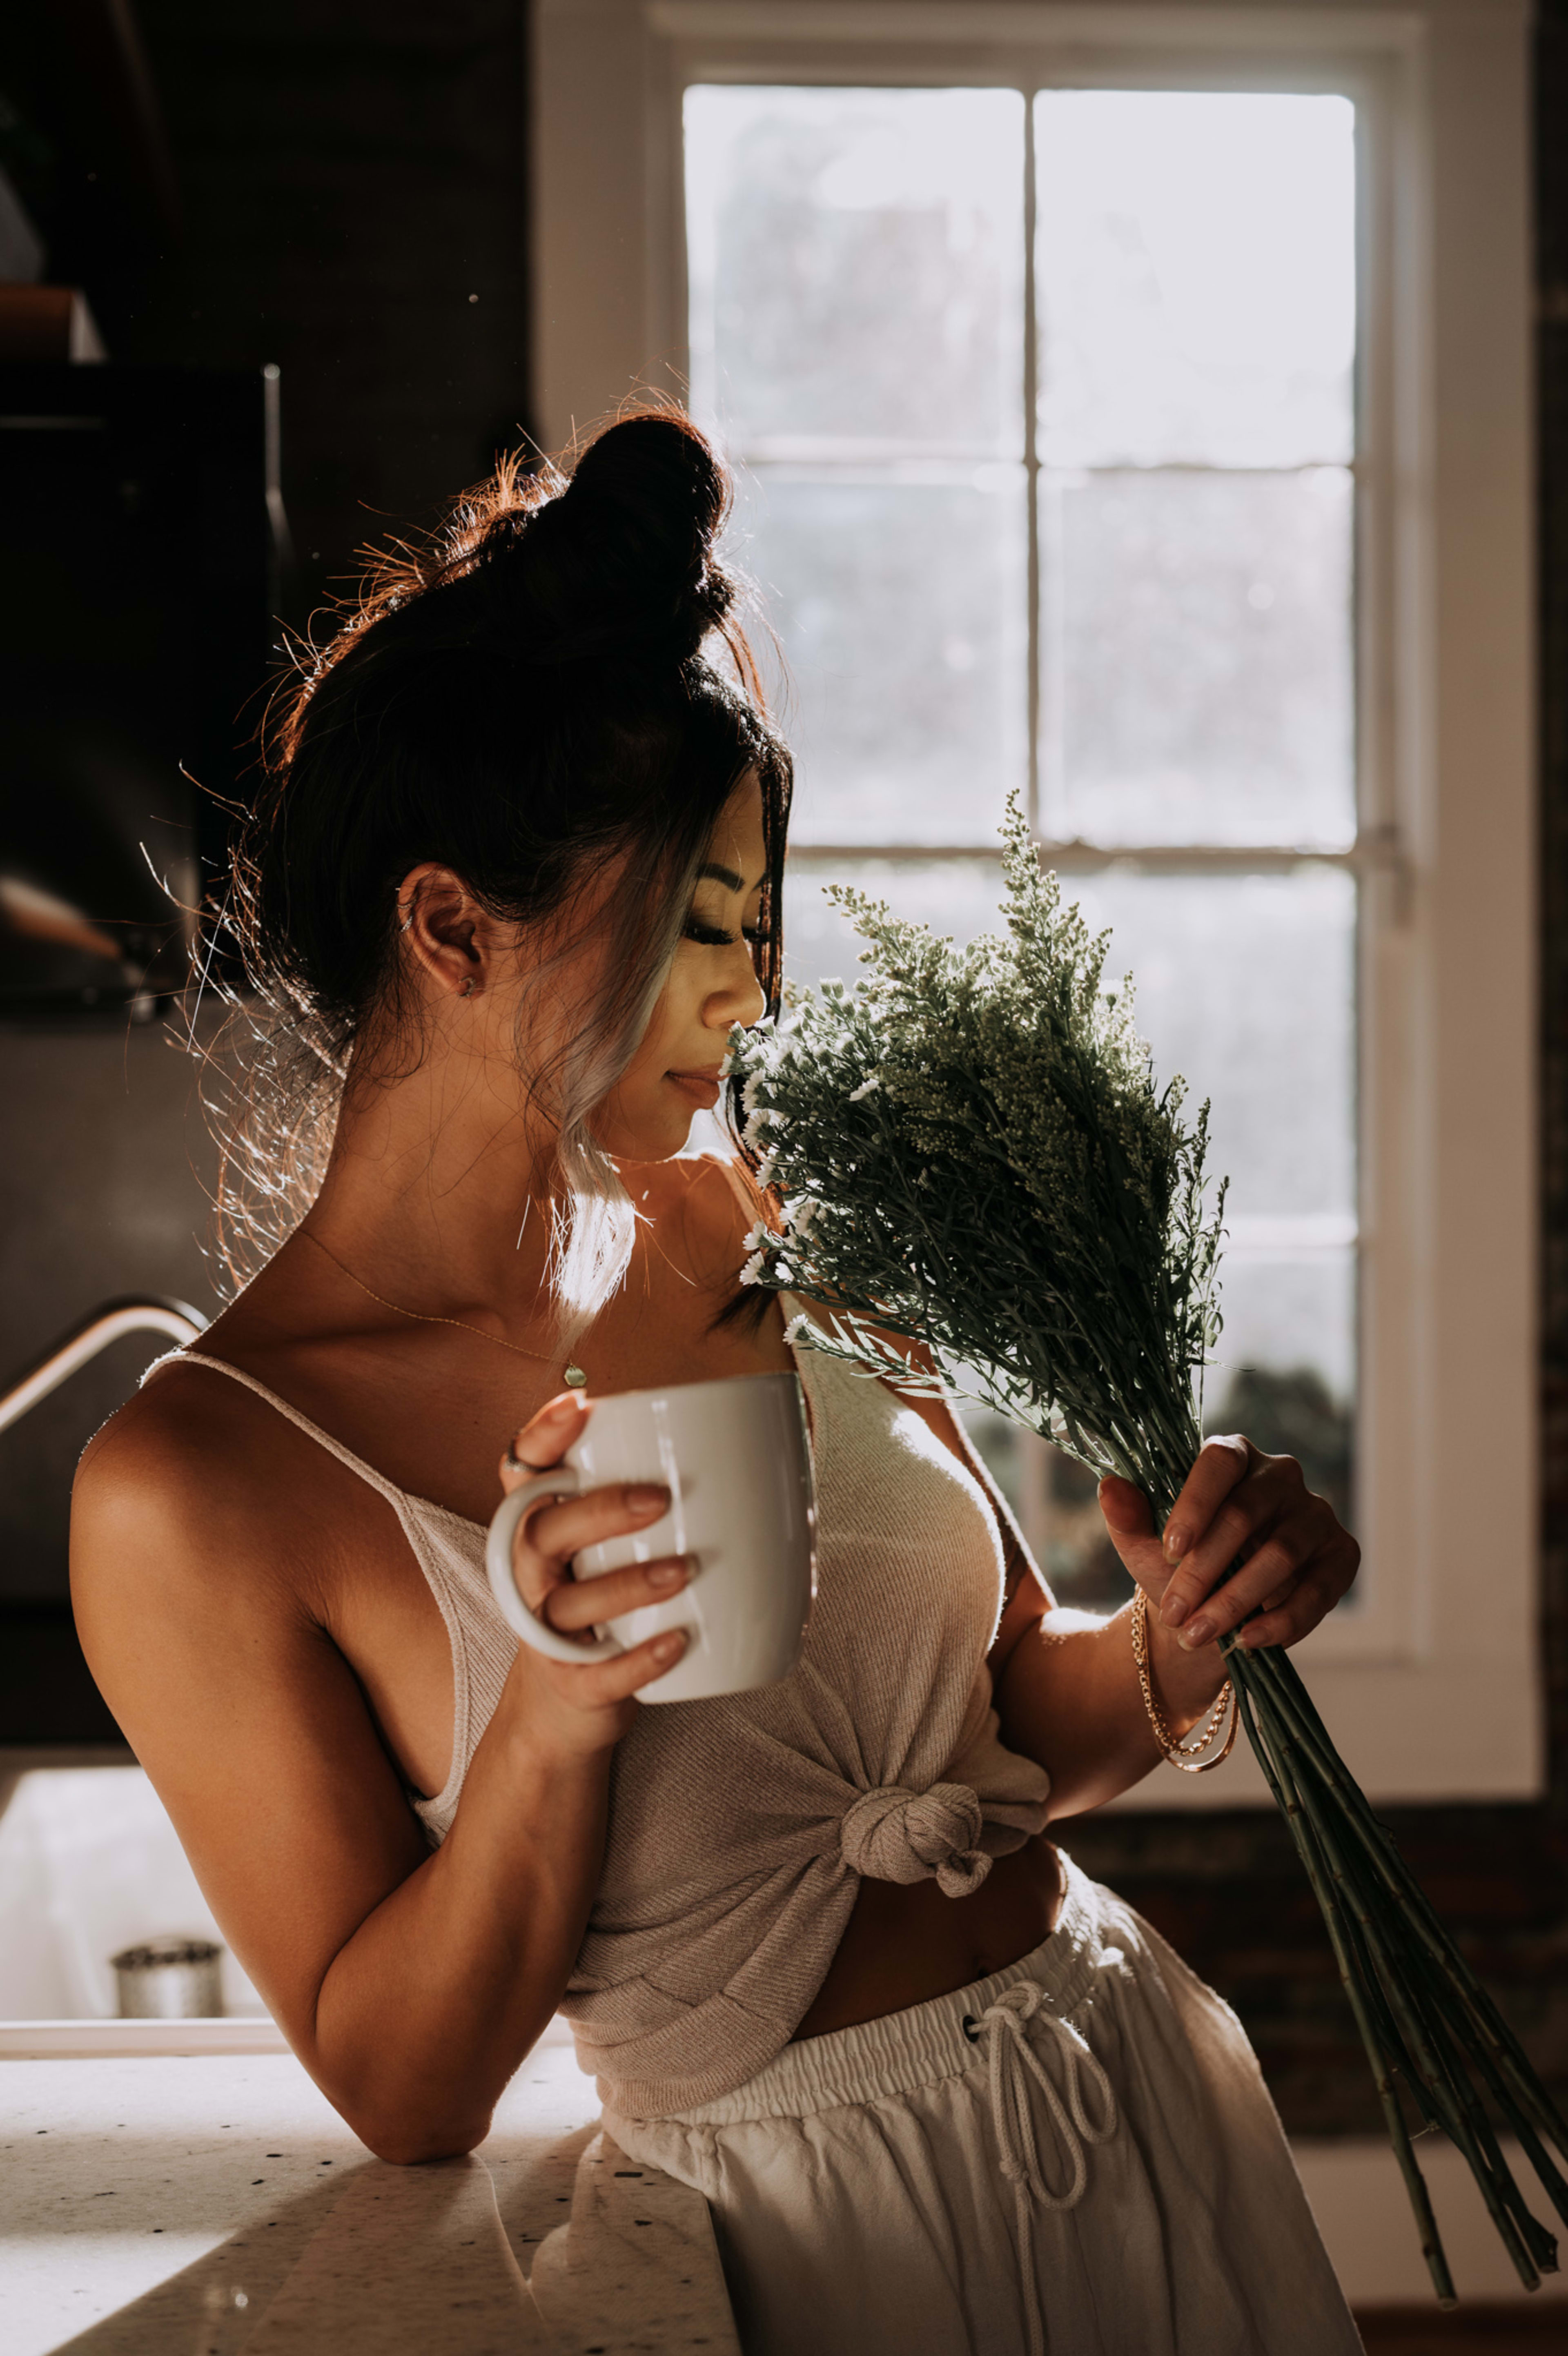 Ein Fotoshooting mit einer Frau, die eine Tasse Kaffee und Blumen in der Hand hält.